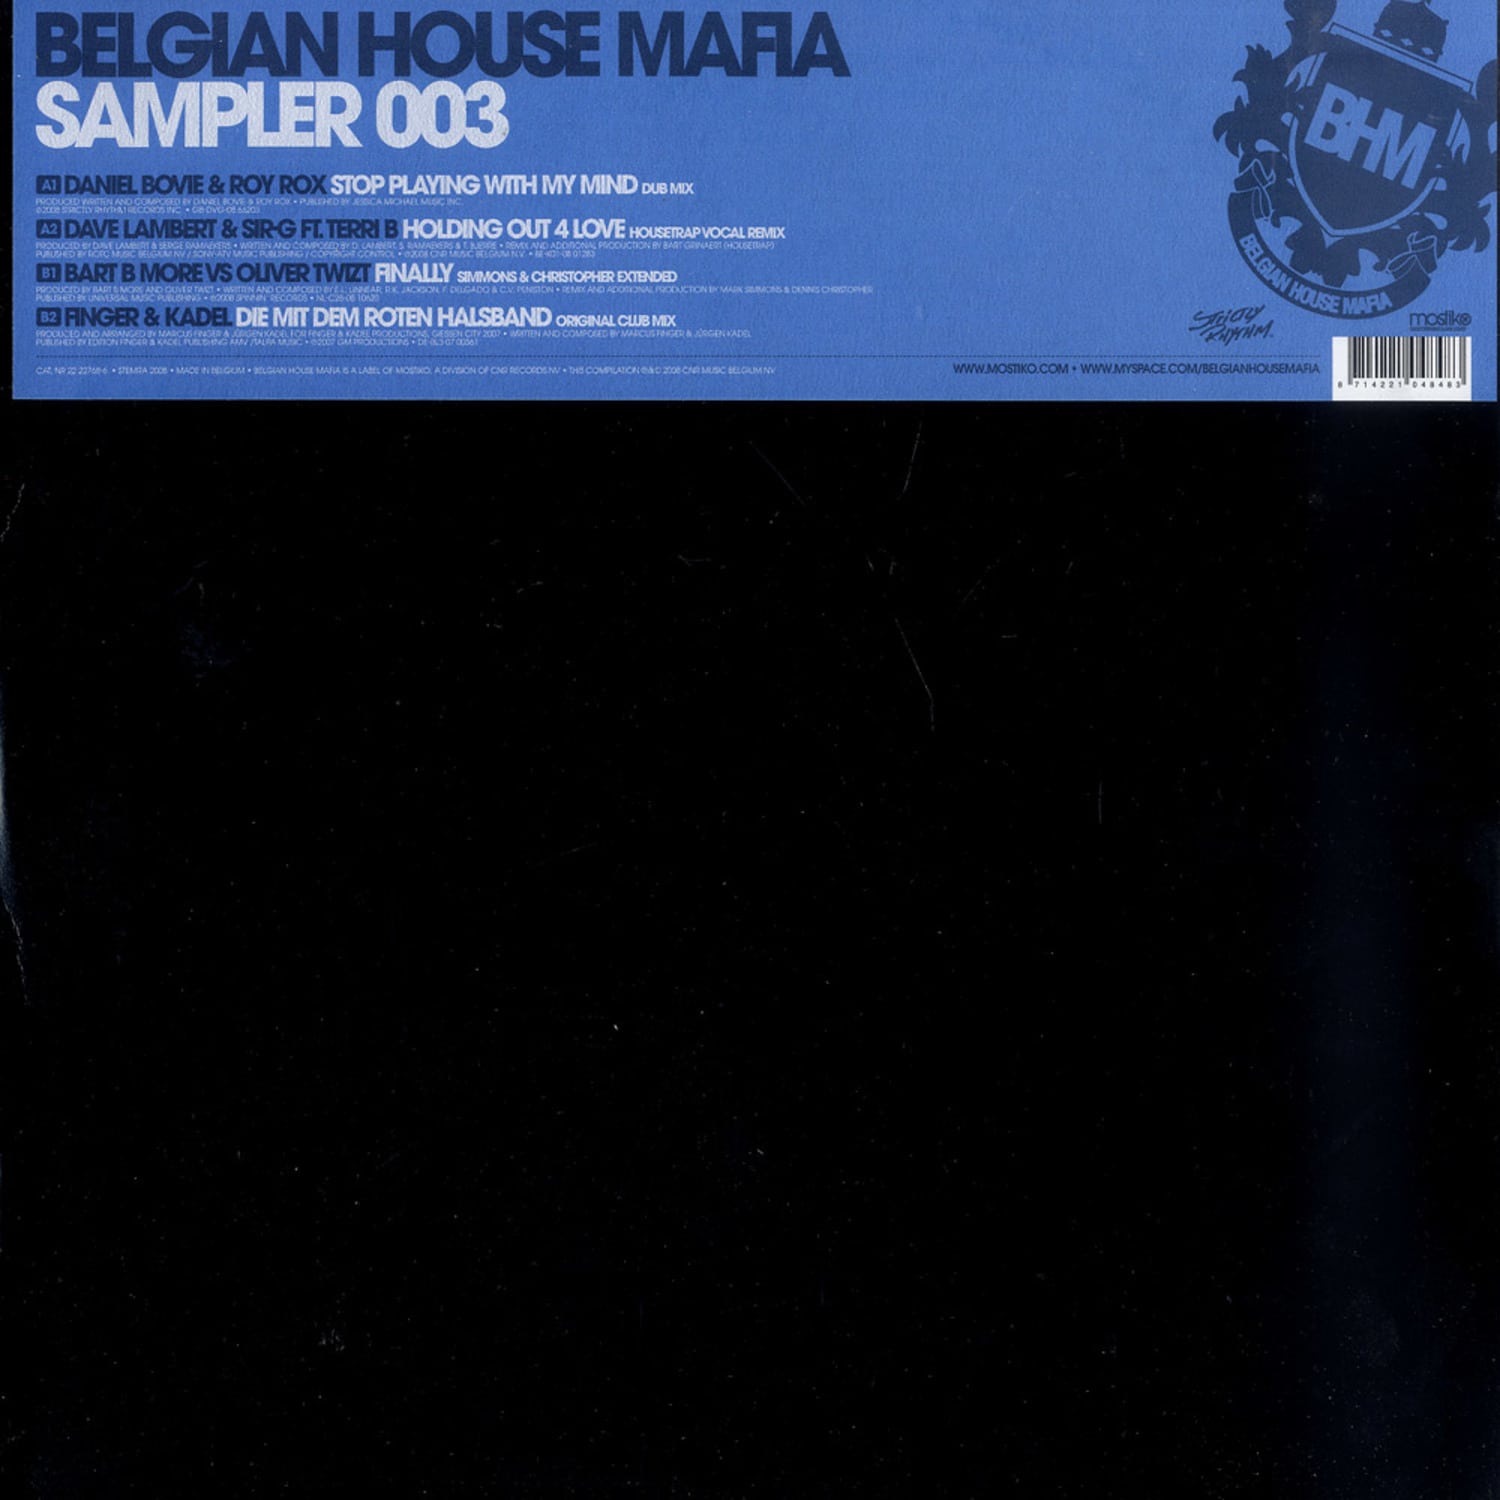 Belgian House Mafia - SAMPLER 003